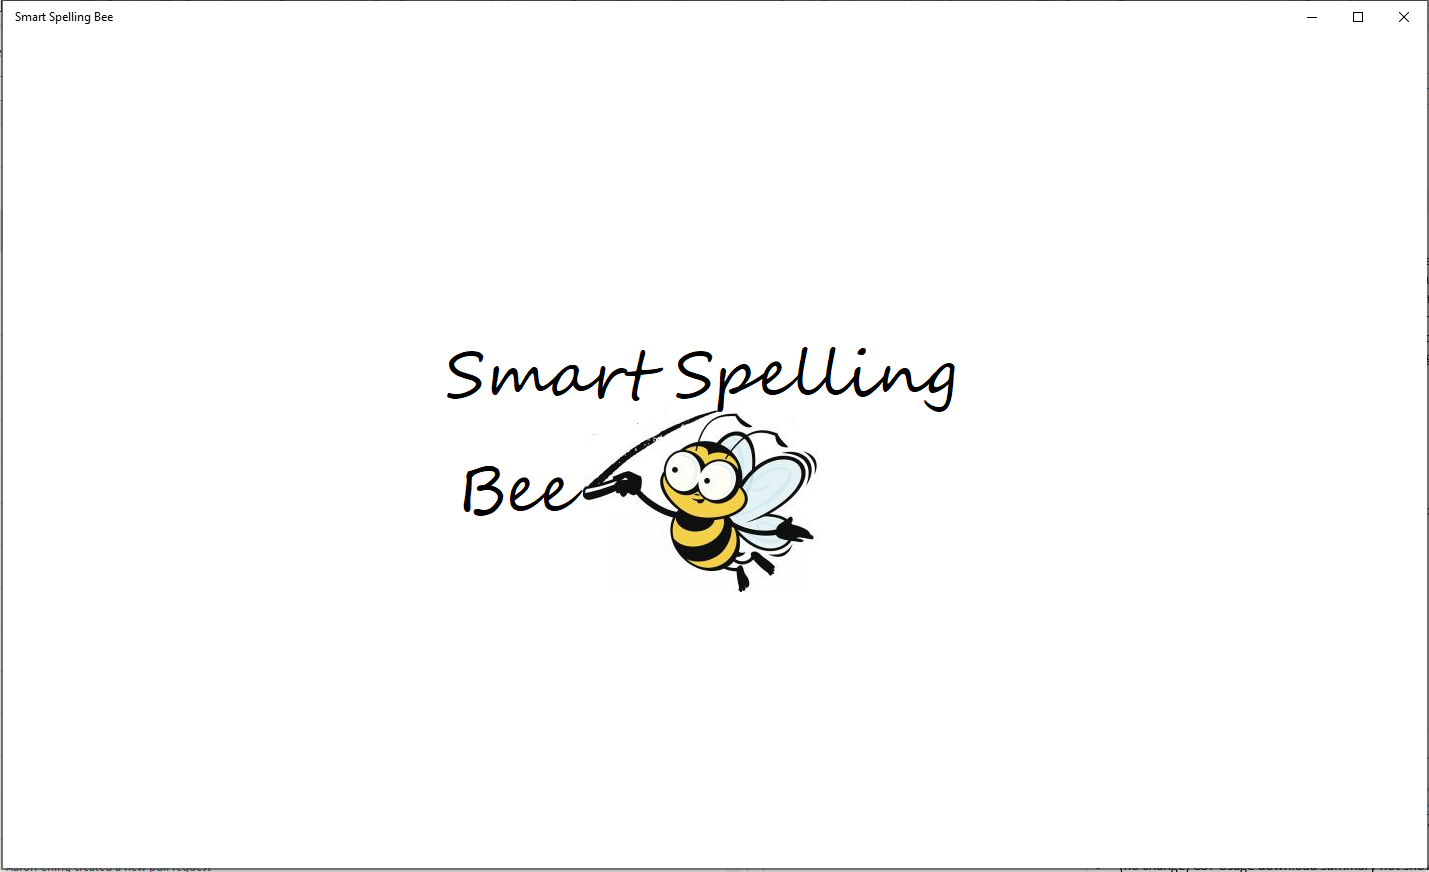 Smart Spelling Bee